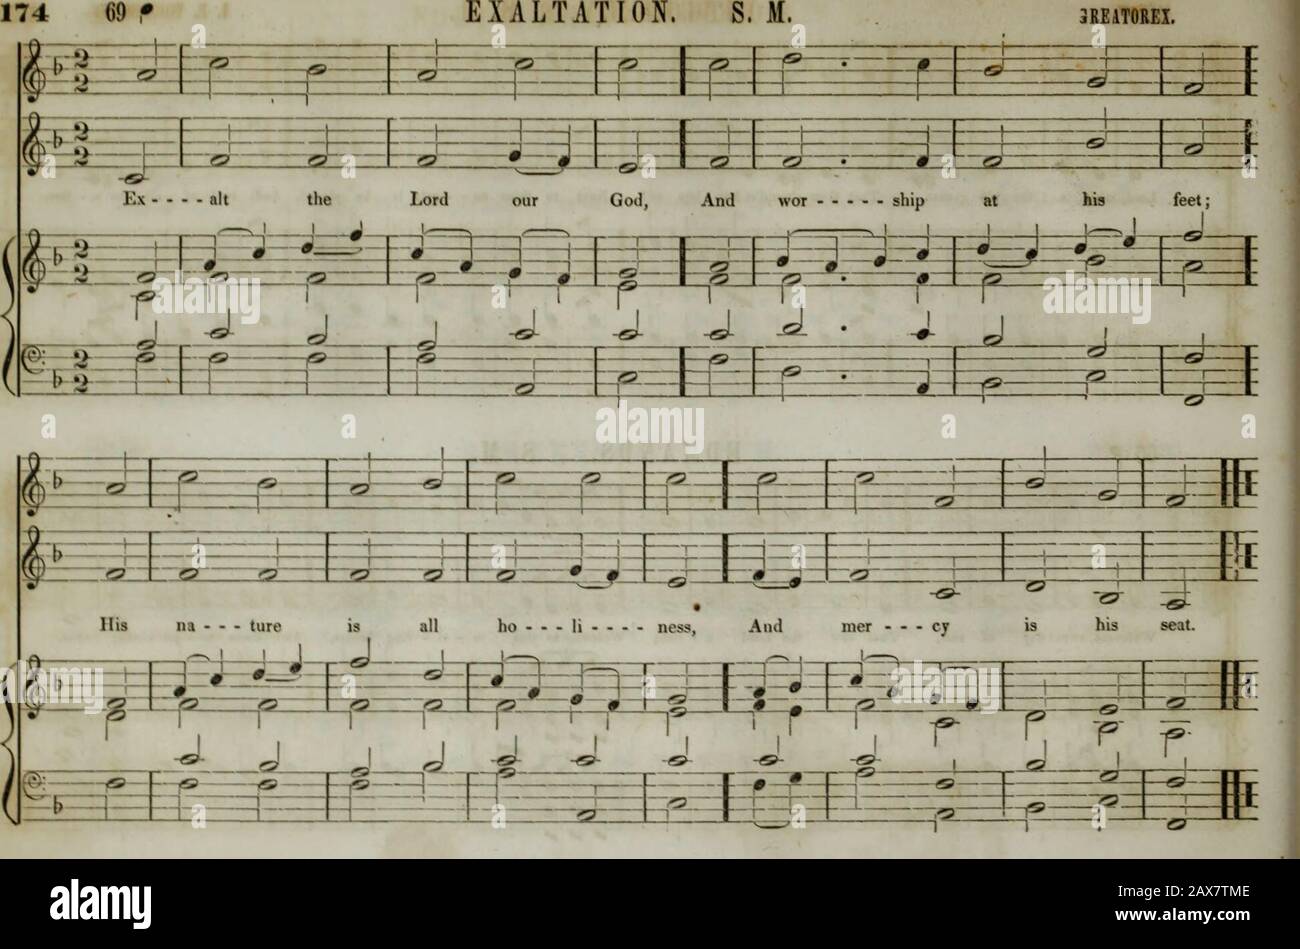 Die Sammlung der Kirchenmusik der Boston Musical Education Society besteht aus originalen Psalm- und Hymnenstücken, ausgewählten Stücken, Gesängen, &c.; einschließlich Kompositionen, die an den Dienst der evangelischen Episkopalkirchengemeinde angepasst sind. &gt;- . • -•• f. ^=#1 h&! 0 9 9 9 m • 0 9 9 •" c •, - ^ 1 1 1 r-V#, in Mil MH-b 1 11 i &lt;" r,-j-h * * PZ r 1 Lord, V -3-J-d-i-f-   FH- H rhat ist gebührenpflichtig - Ble man, Dass du 1-1-( 1-i schultest. ,- -f- t liebt ihn so! Neben dir d-r-IV-! 4-r an - - Gele ist er platziert, Und -1-LT+-+rj-r^ herr aller sein - - . f niedrig. 1 m -L. p-r 1 r rf f r *r J PJ-J pj-!-PA-J •Jrr p-p+p Stockfoto